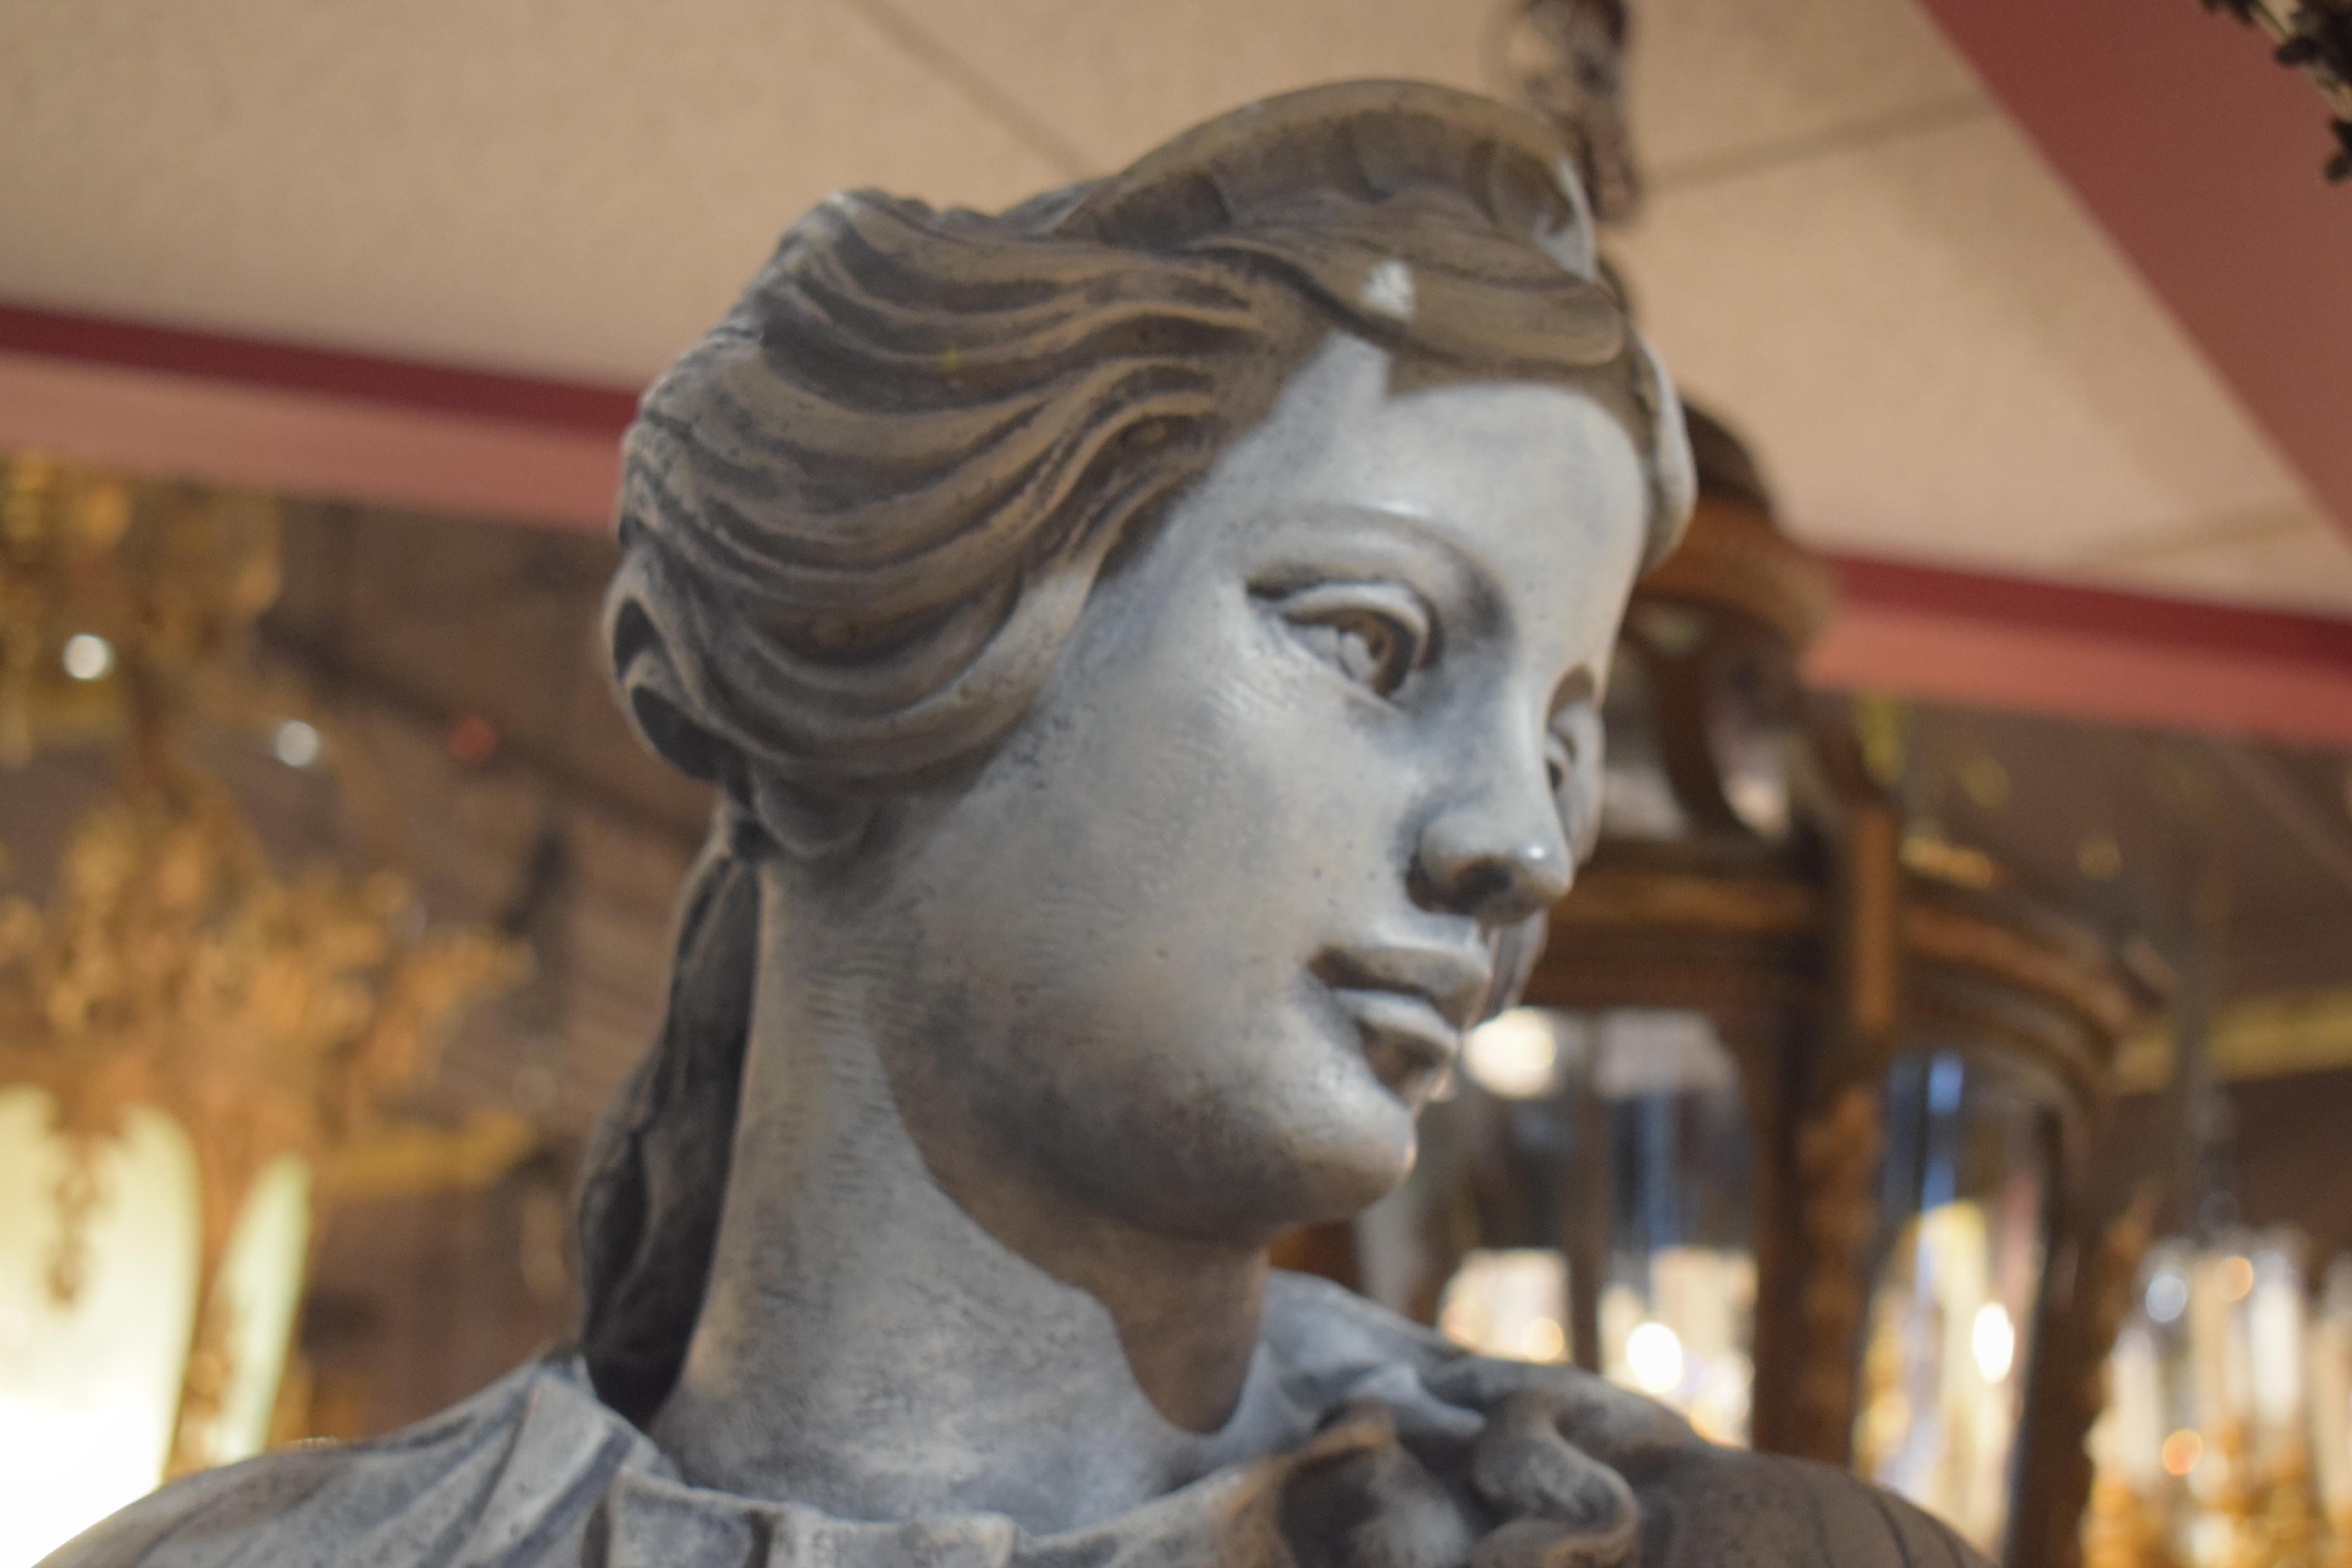 Eine schöne Statue eines Mädchens in klassischem Gewand. Auf einem quadratischen Sockel stehend.
Gesamthöhe: 87